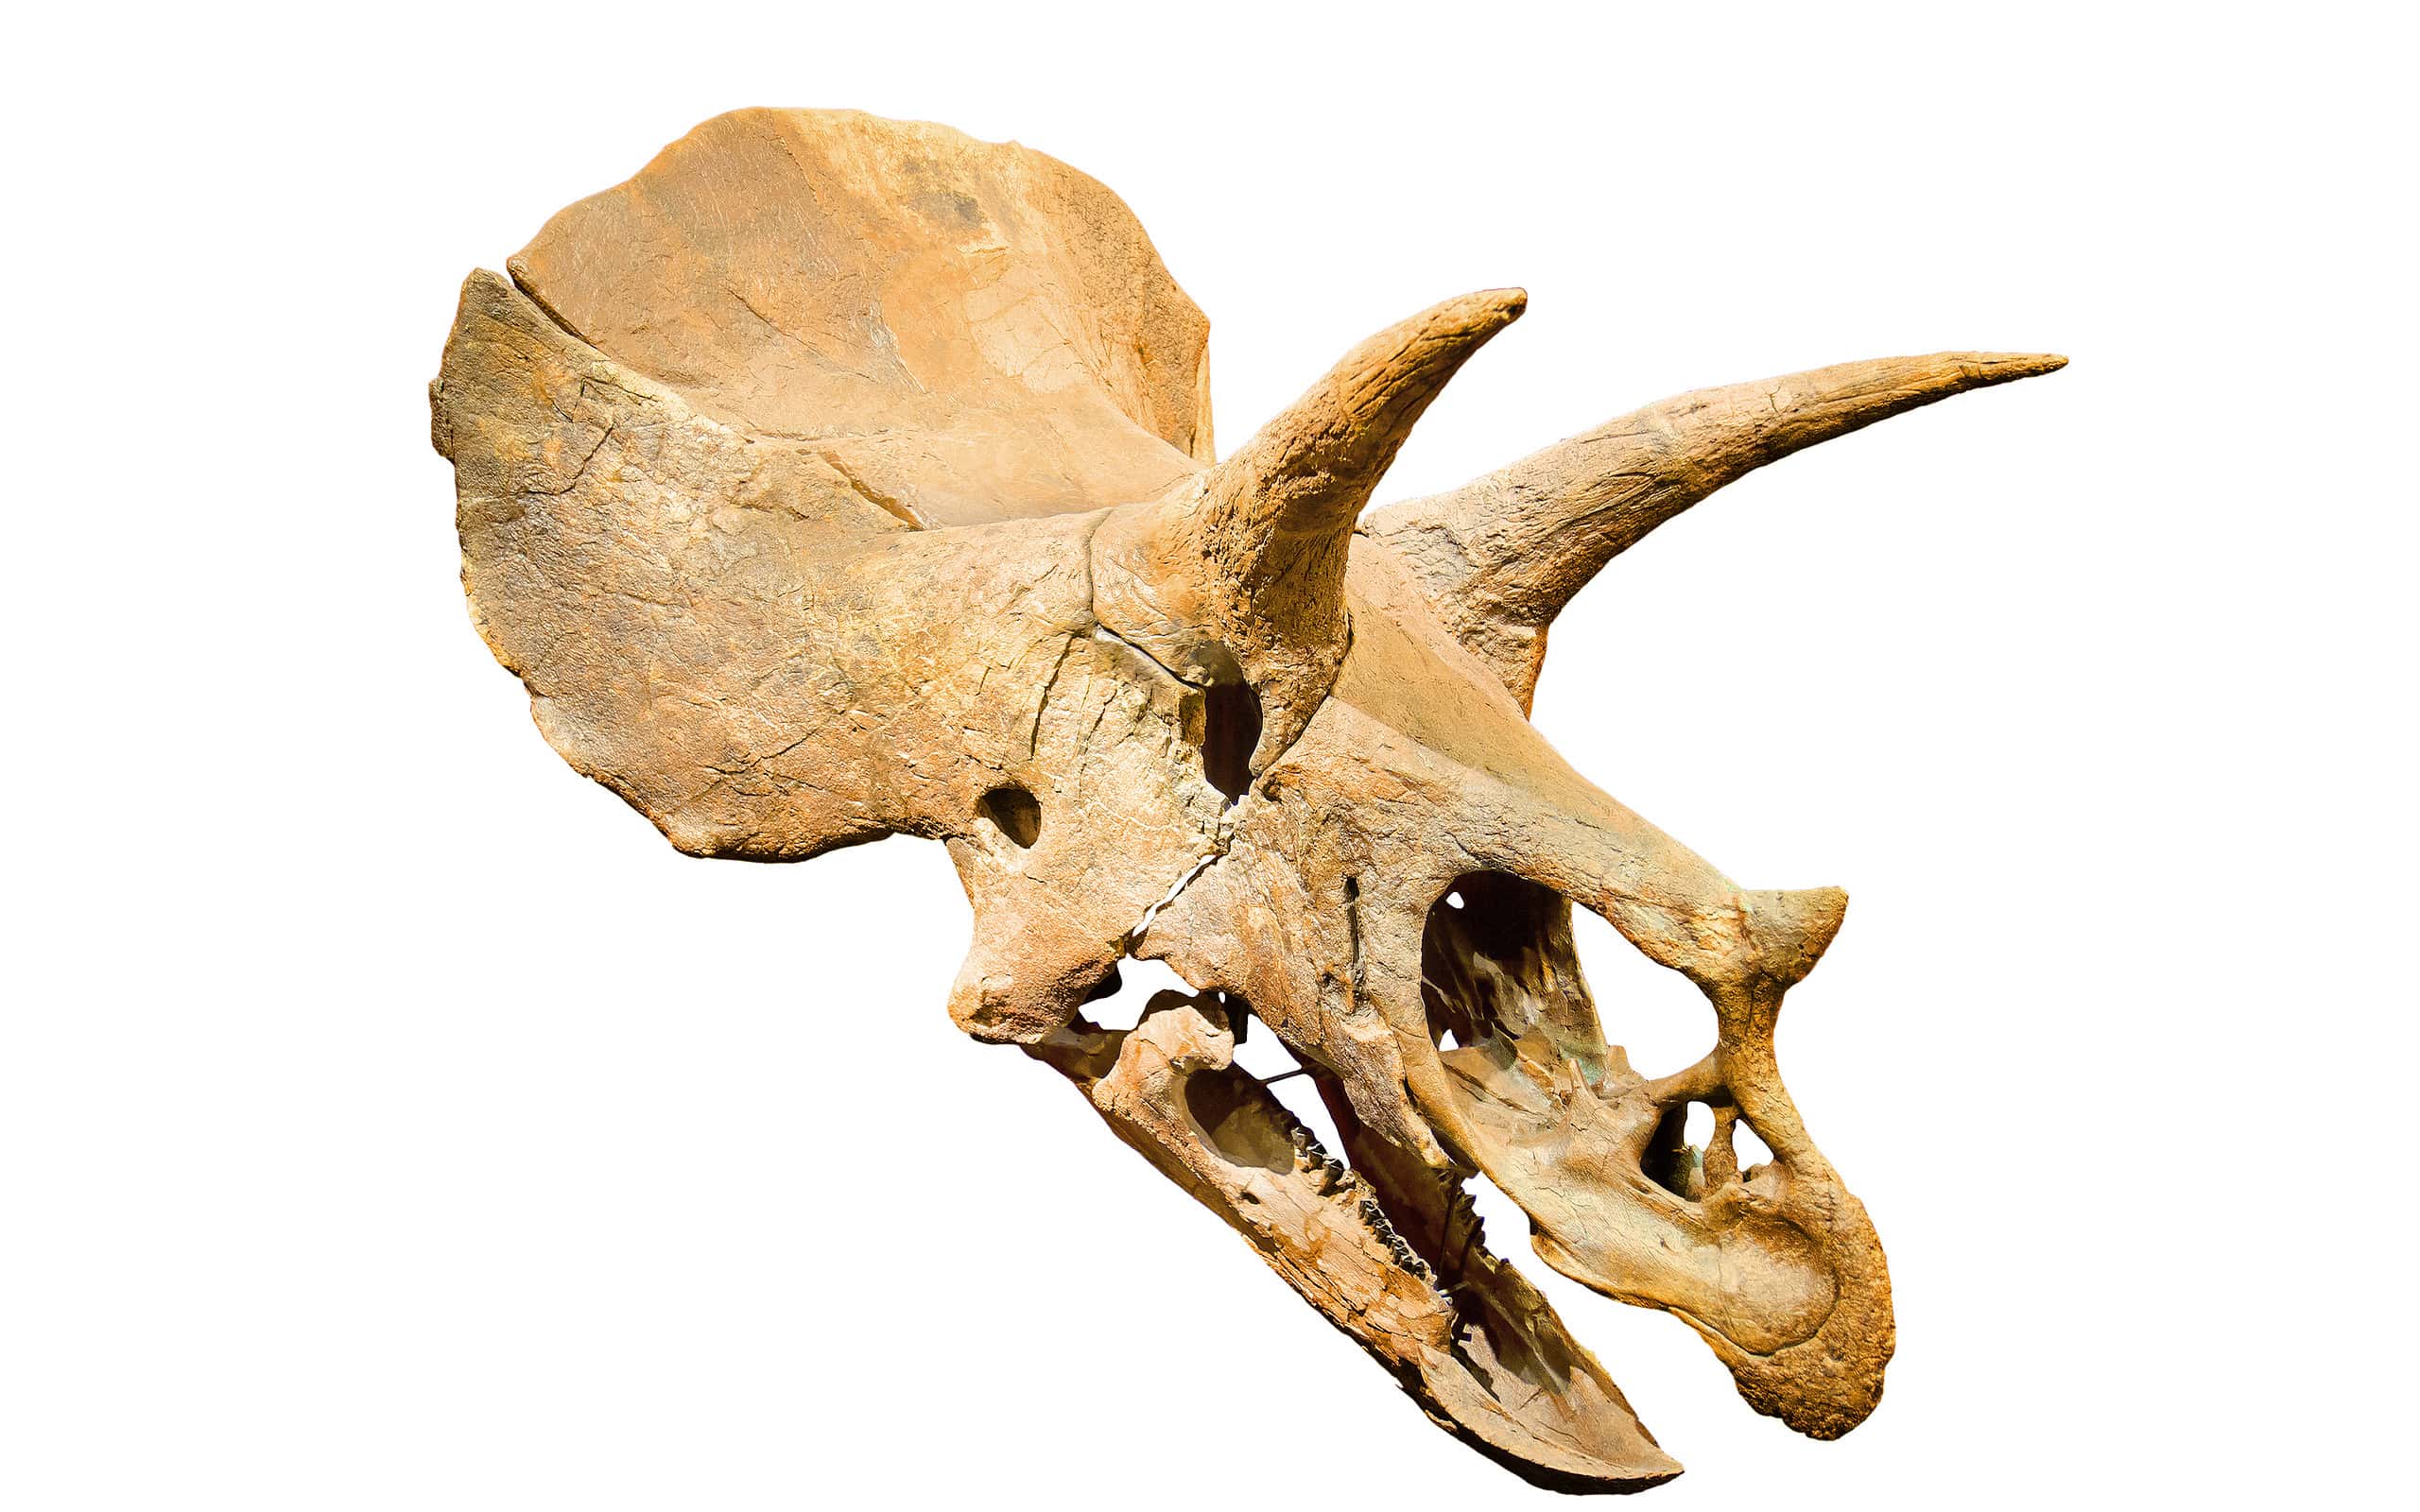 Cranio fossile di triceratopo su sfondo bianco isolato